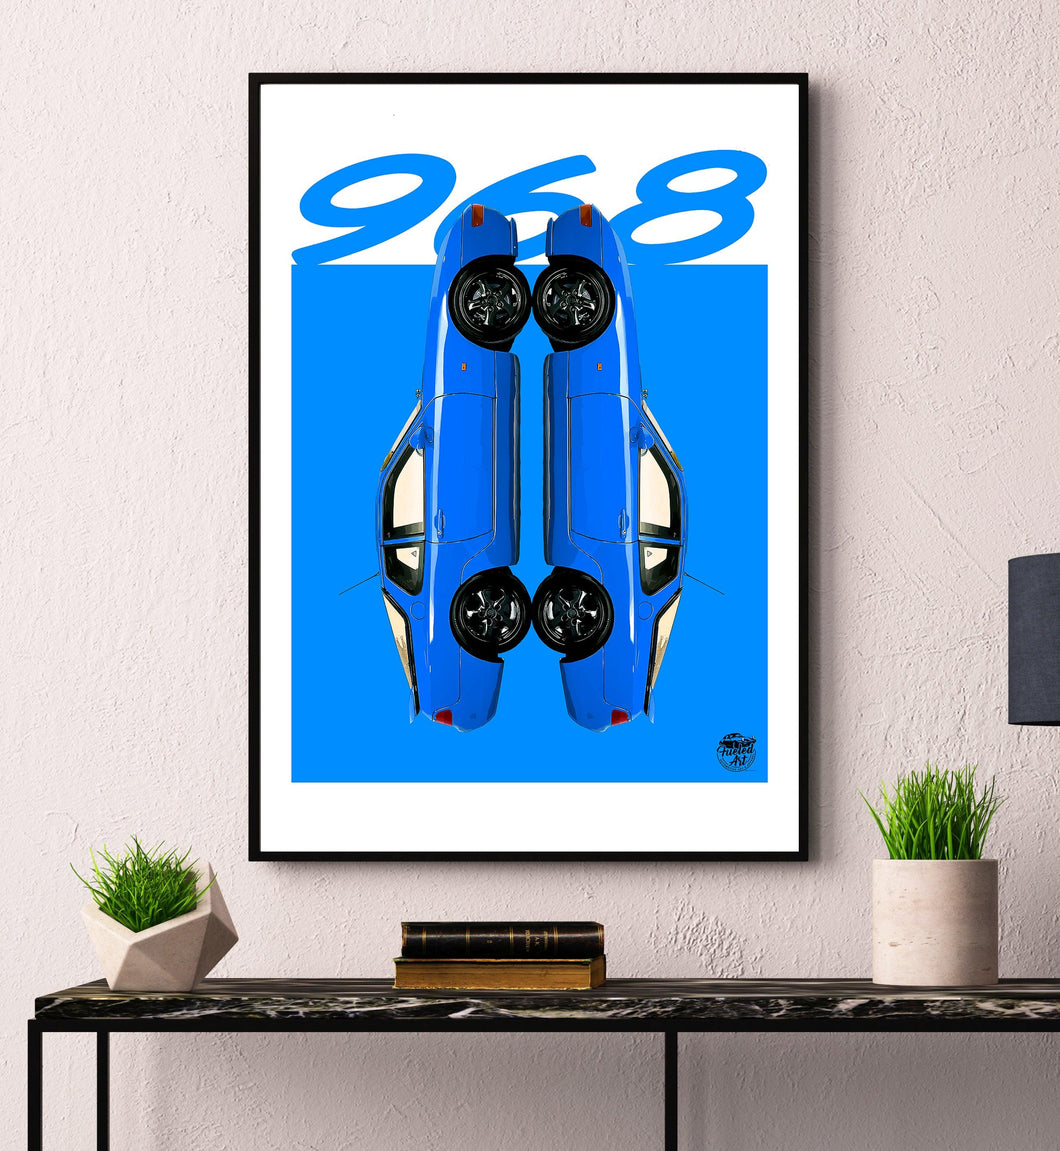 Porsche 968 Print - Maritime Blue - Fueled.art